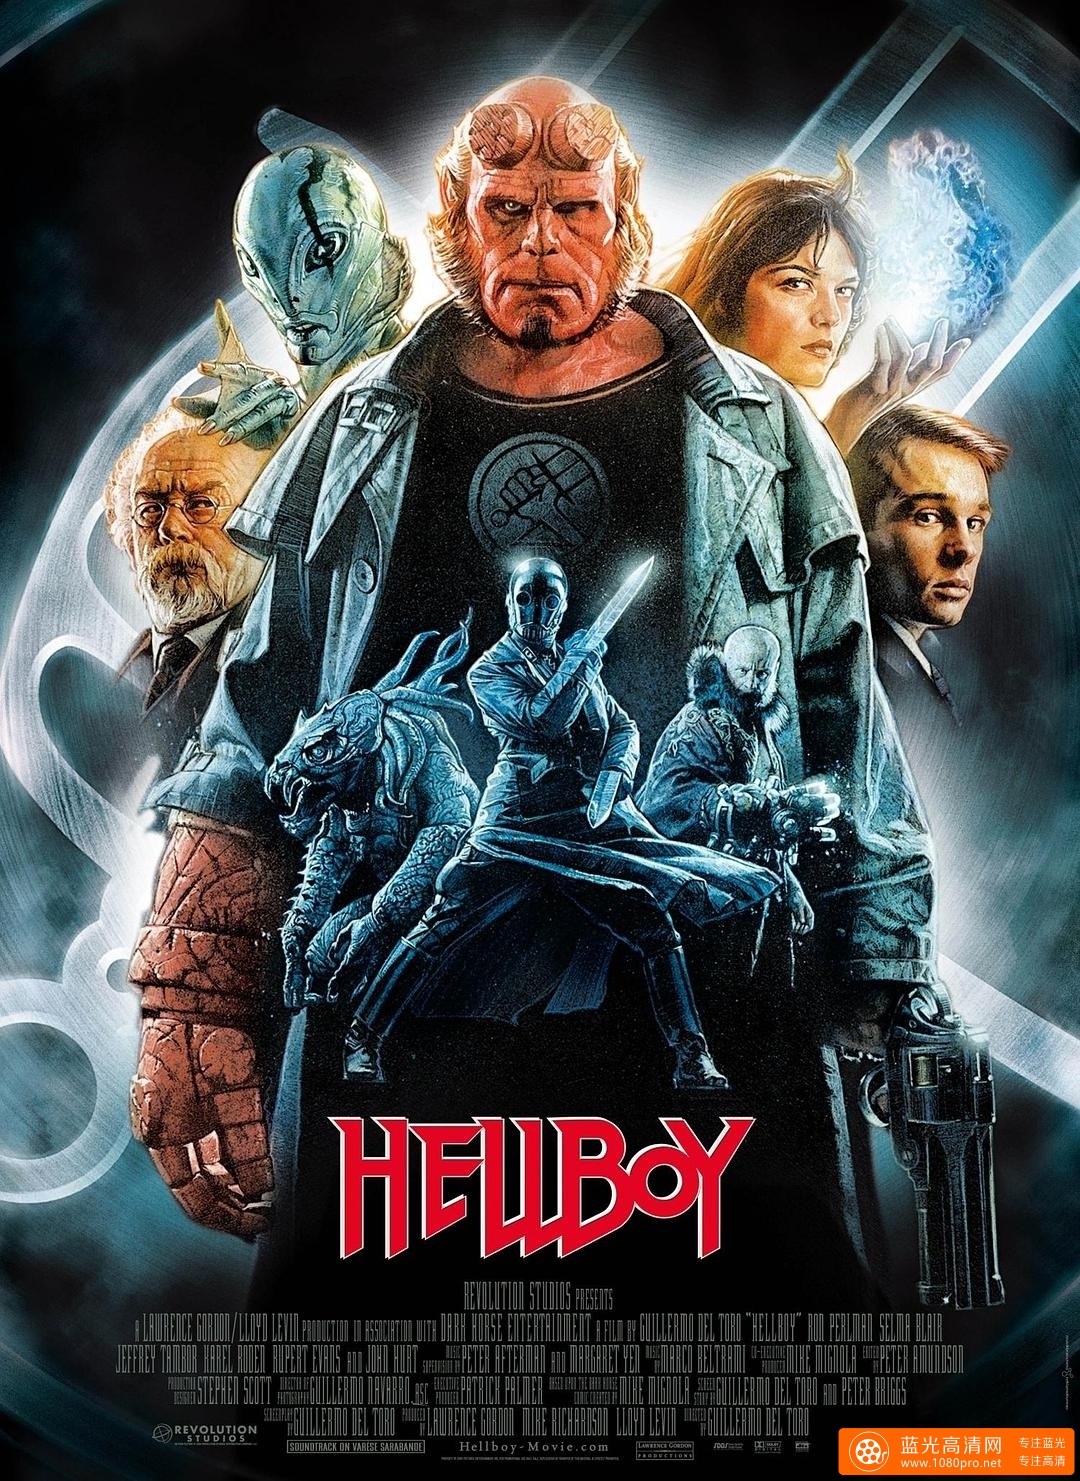 地狱男爵/地狱小子 Hellboy.2004.DC.1080p.BluRay.x264.DTS-FGT 16.54GB